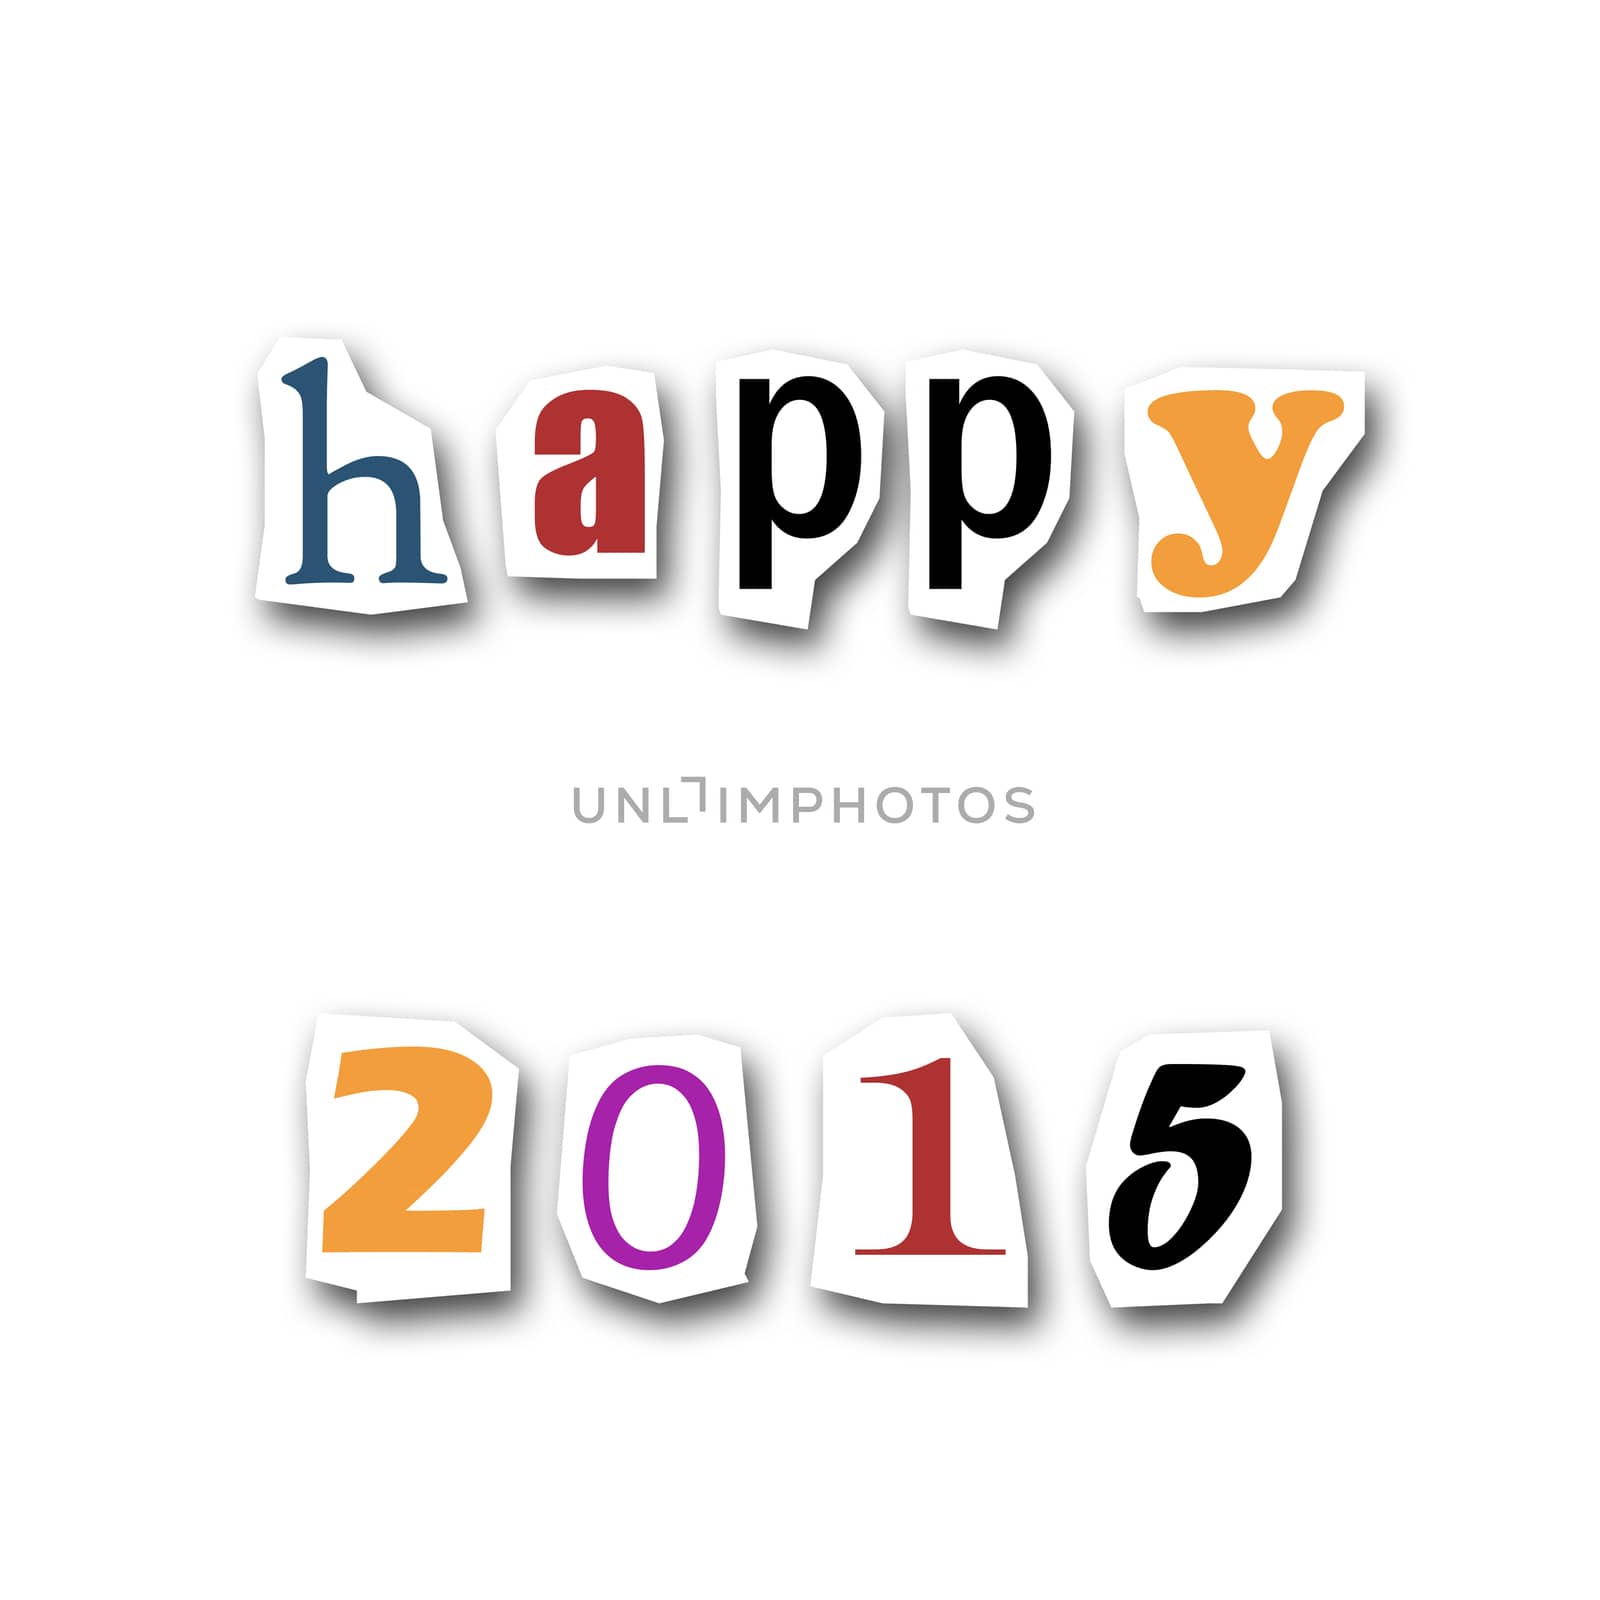 Happy 2015 by NeydtStock